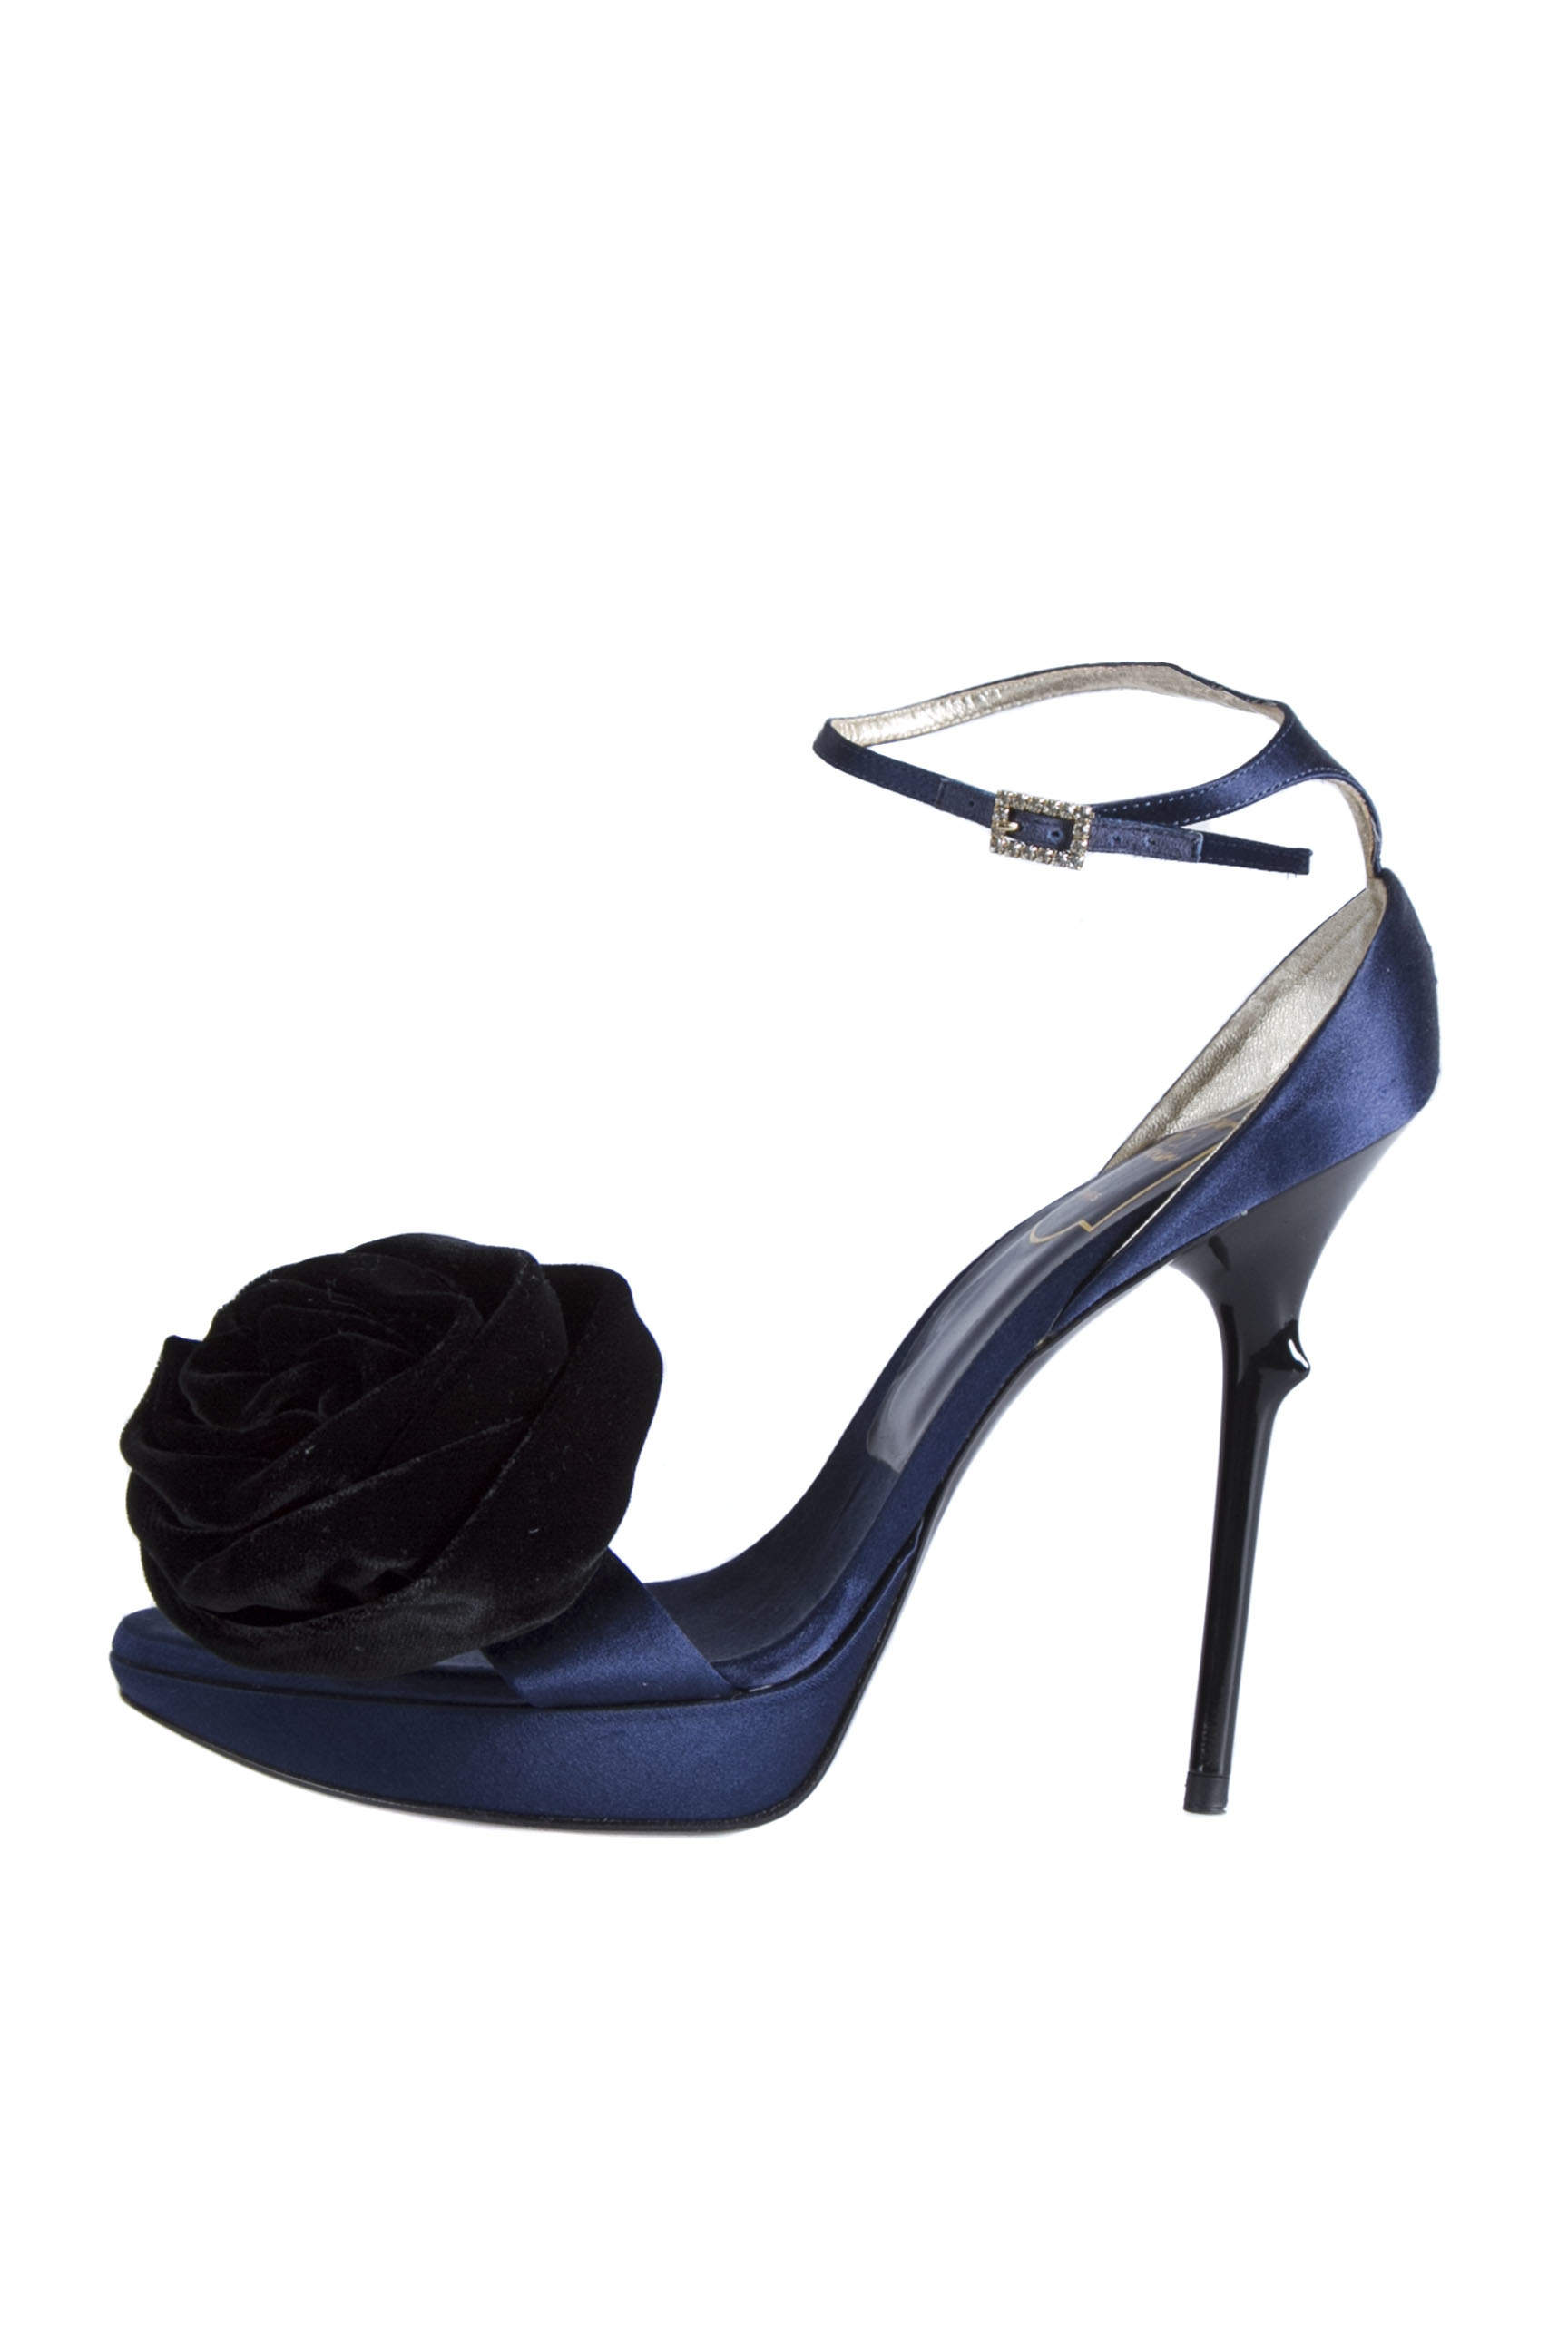 Roger Vivier Blue Satin And Black Floral Ankle Strap Platform Sandals Size 38